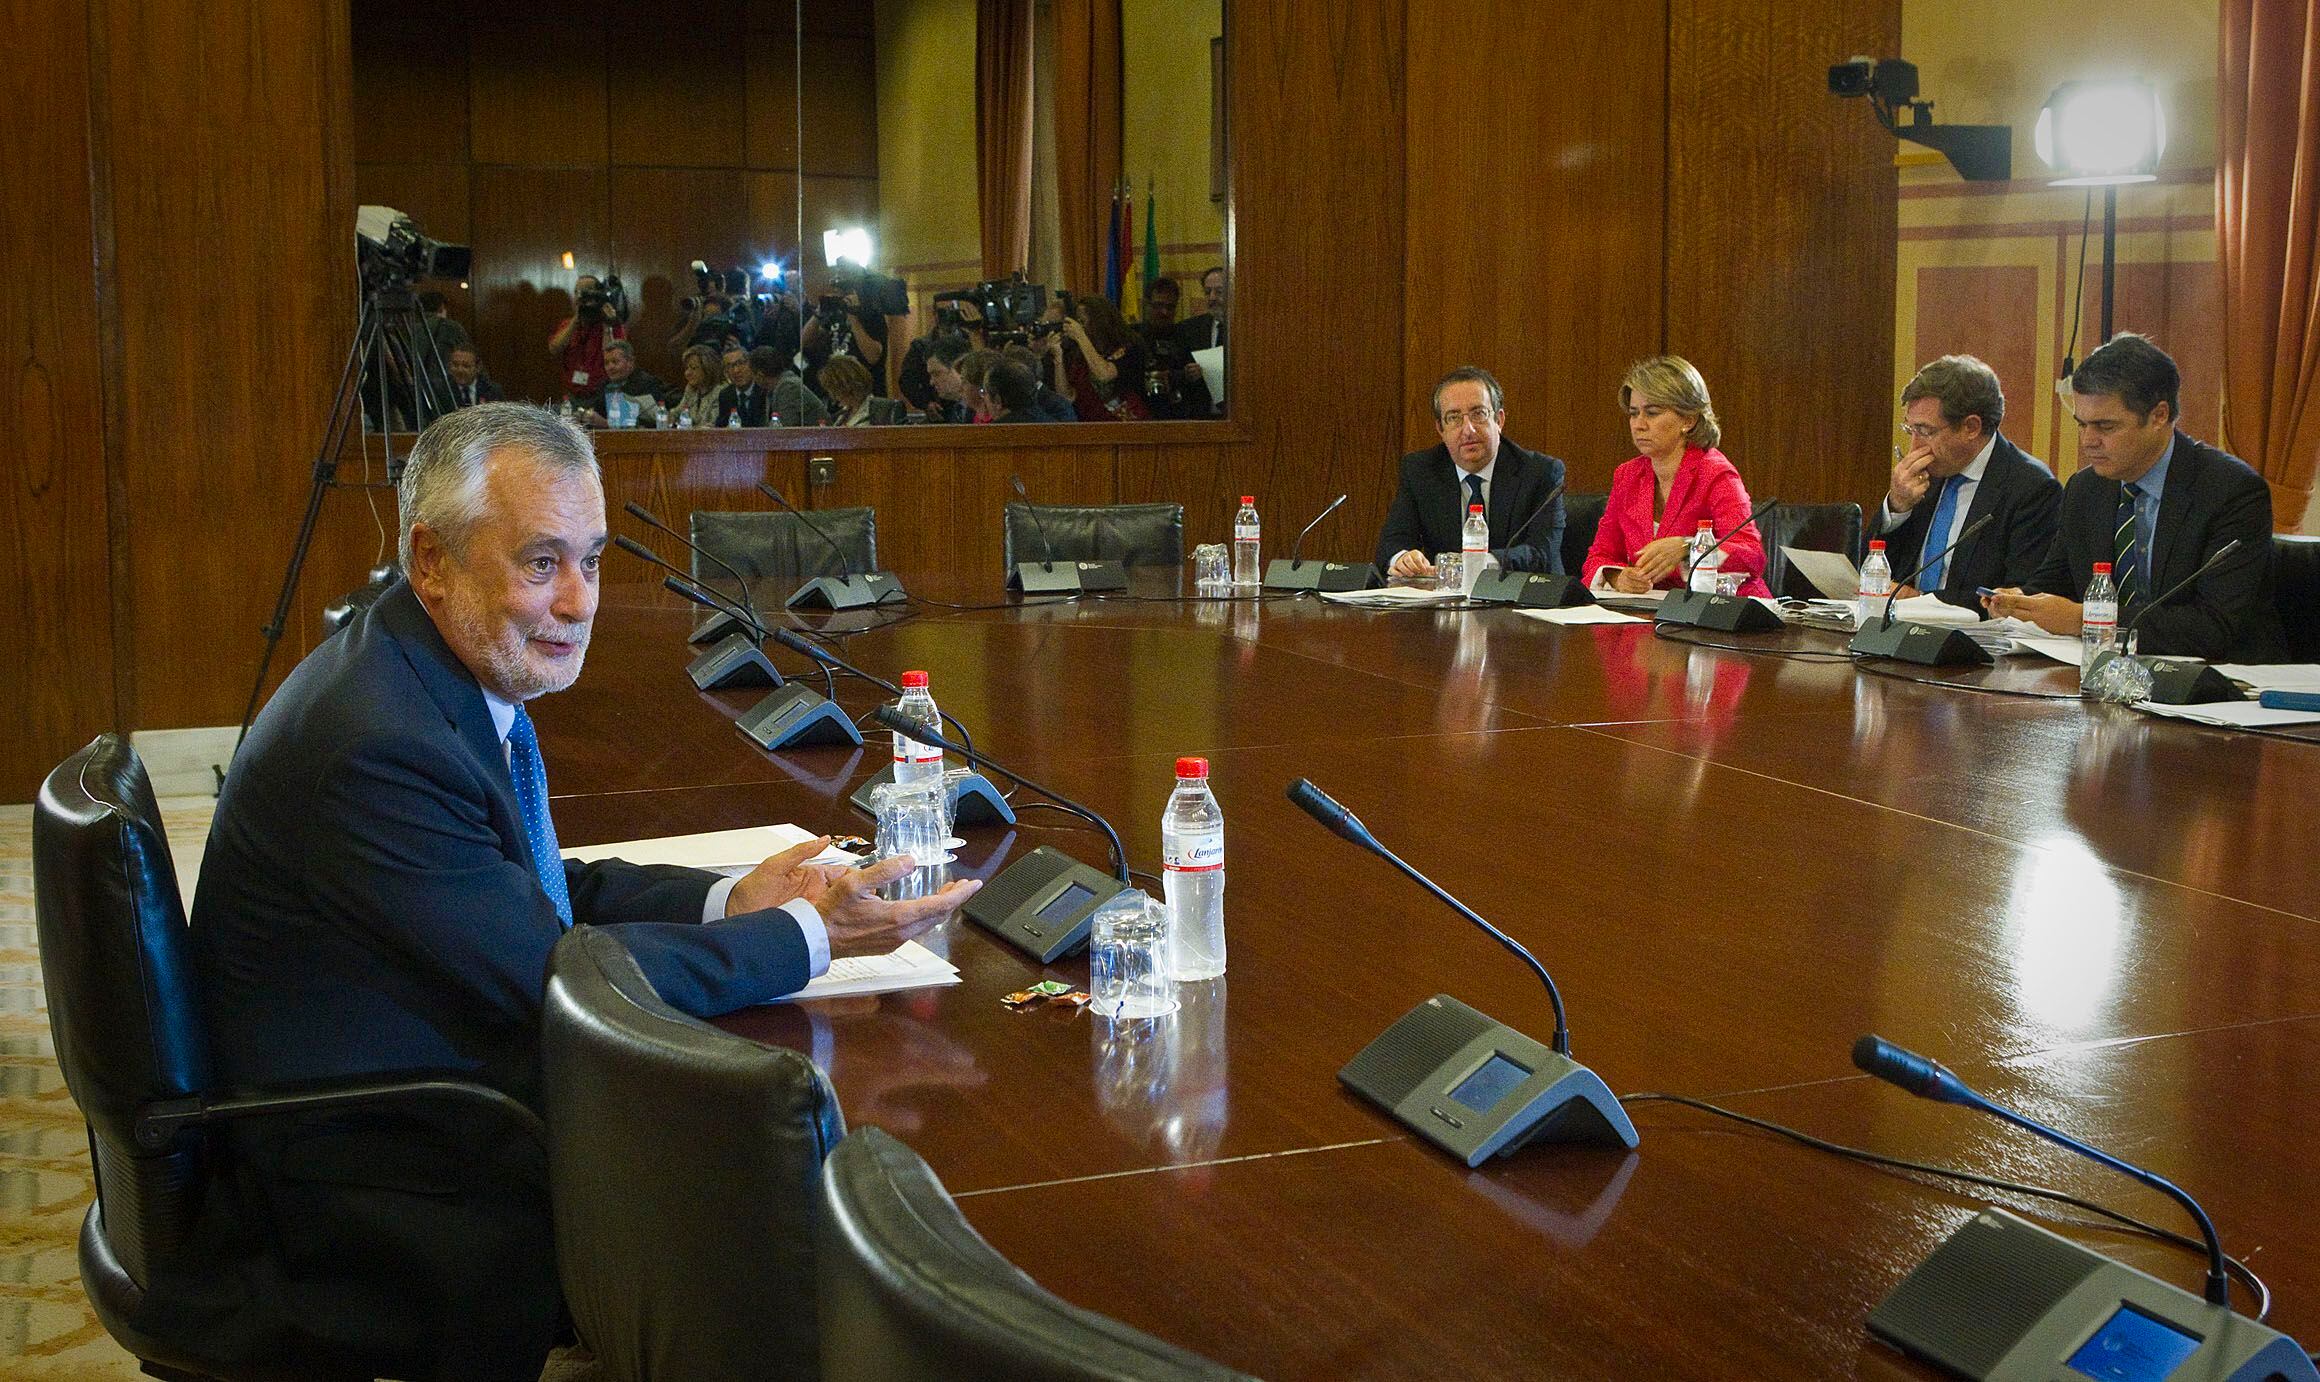 El entonces presidente de la Junta de Andalucía, José Antonio Griñán, comparecía ante la comisión del Parlamento andaluz que investigaba el caso de los ERE fraudulentos, en setiembre de 2012.